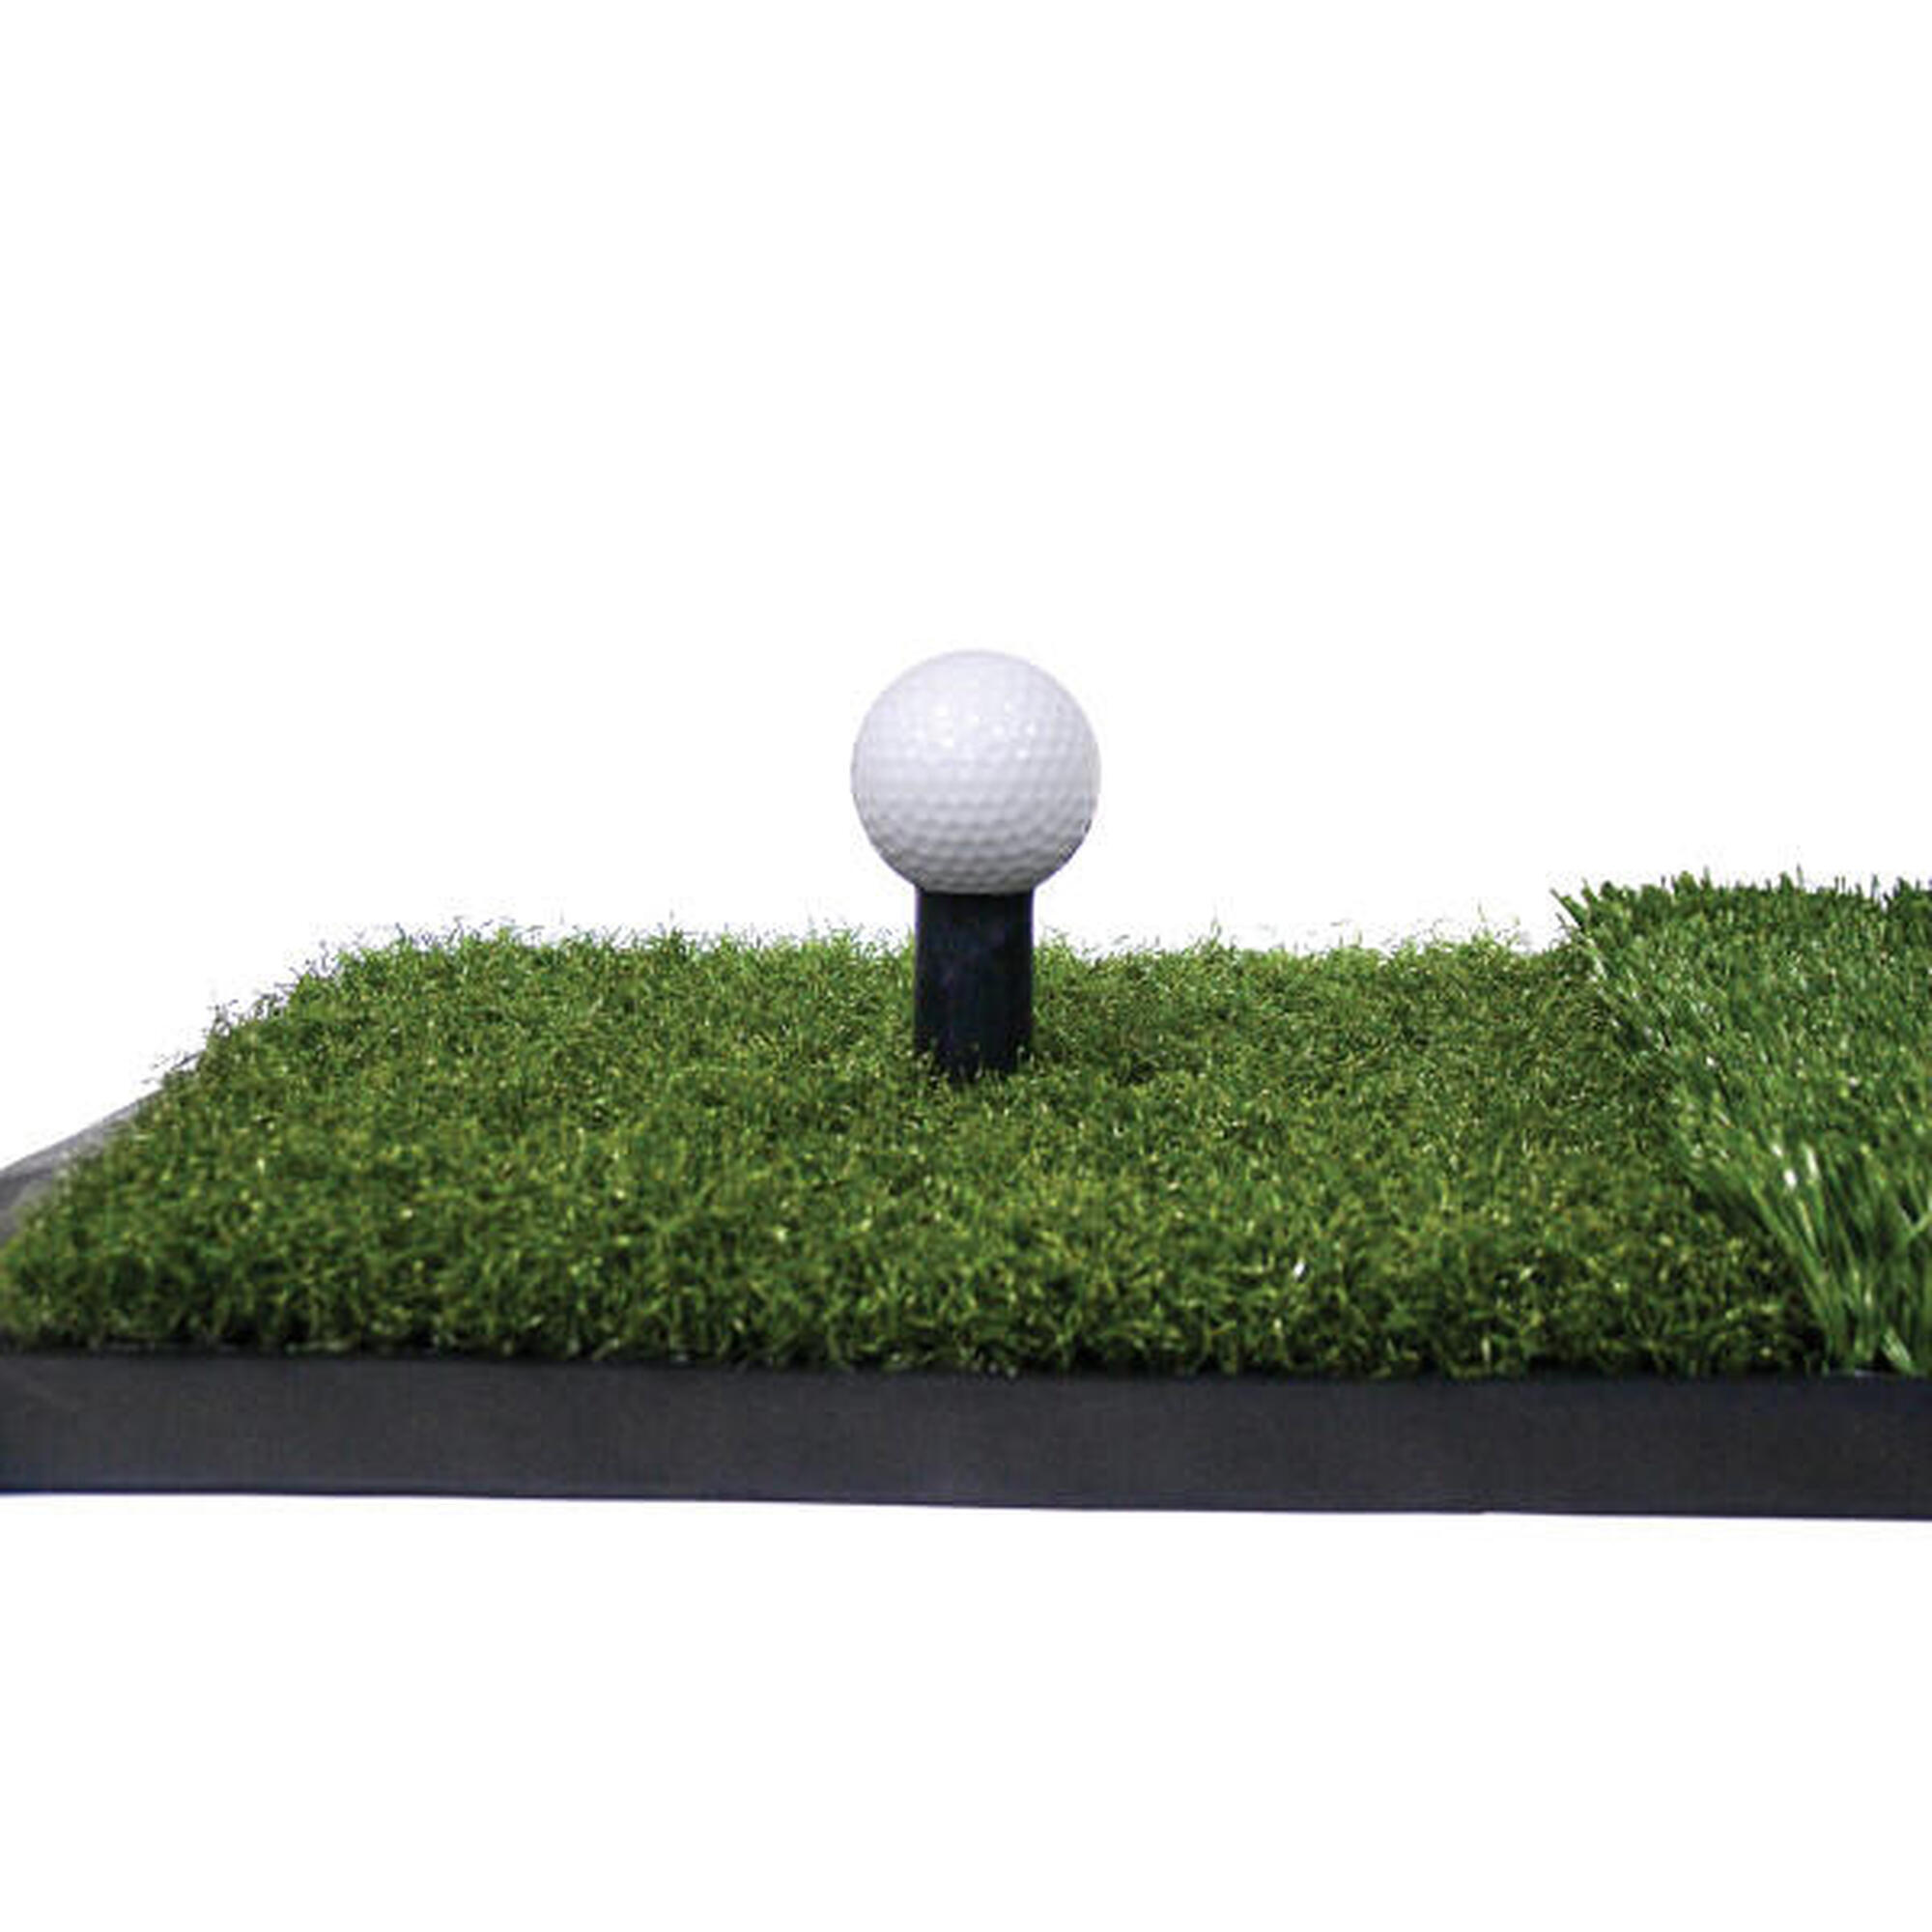 Mejore su swing con esta versátil y resistente alfombrilla de golf.